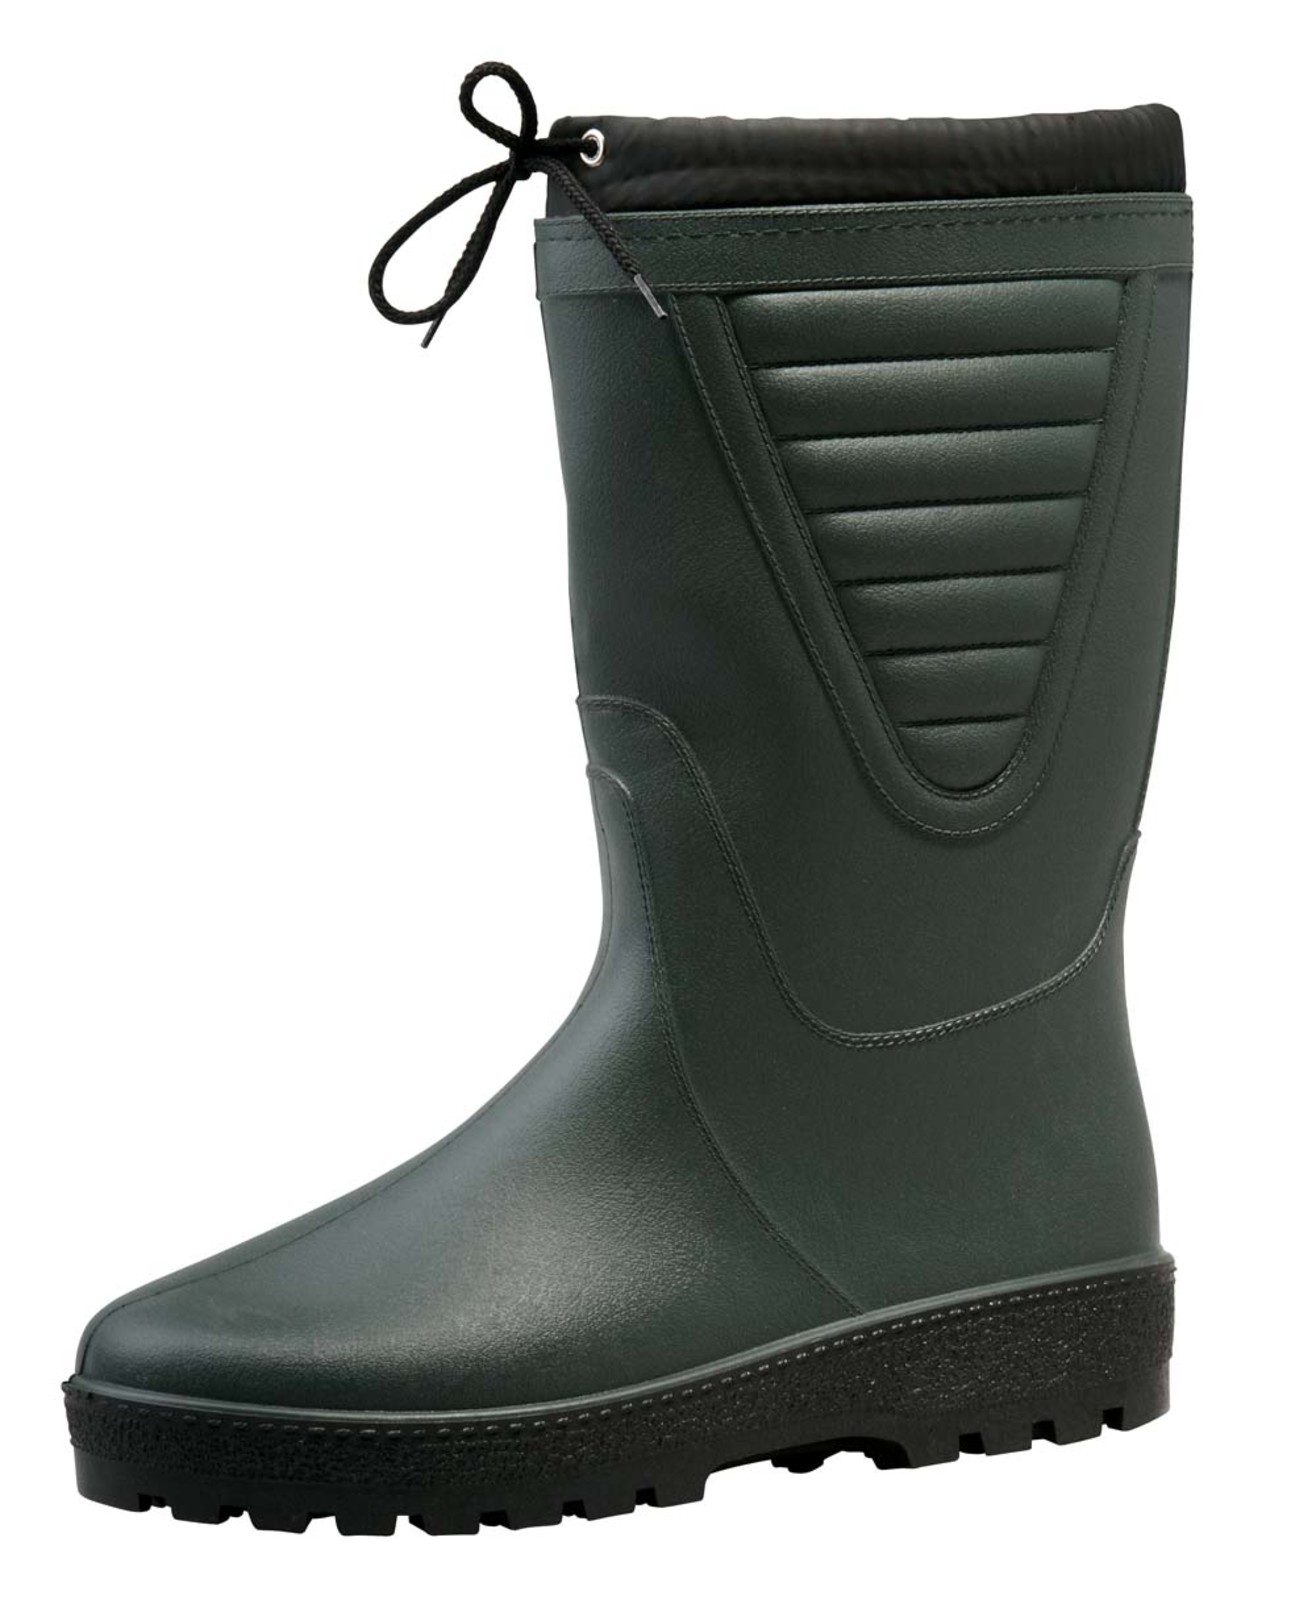 Zateplené čižmy Boots Polar - veľkosť: 47, farba: zelená